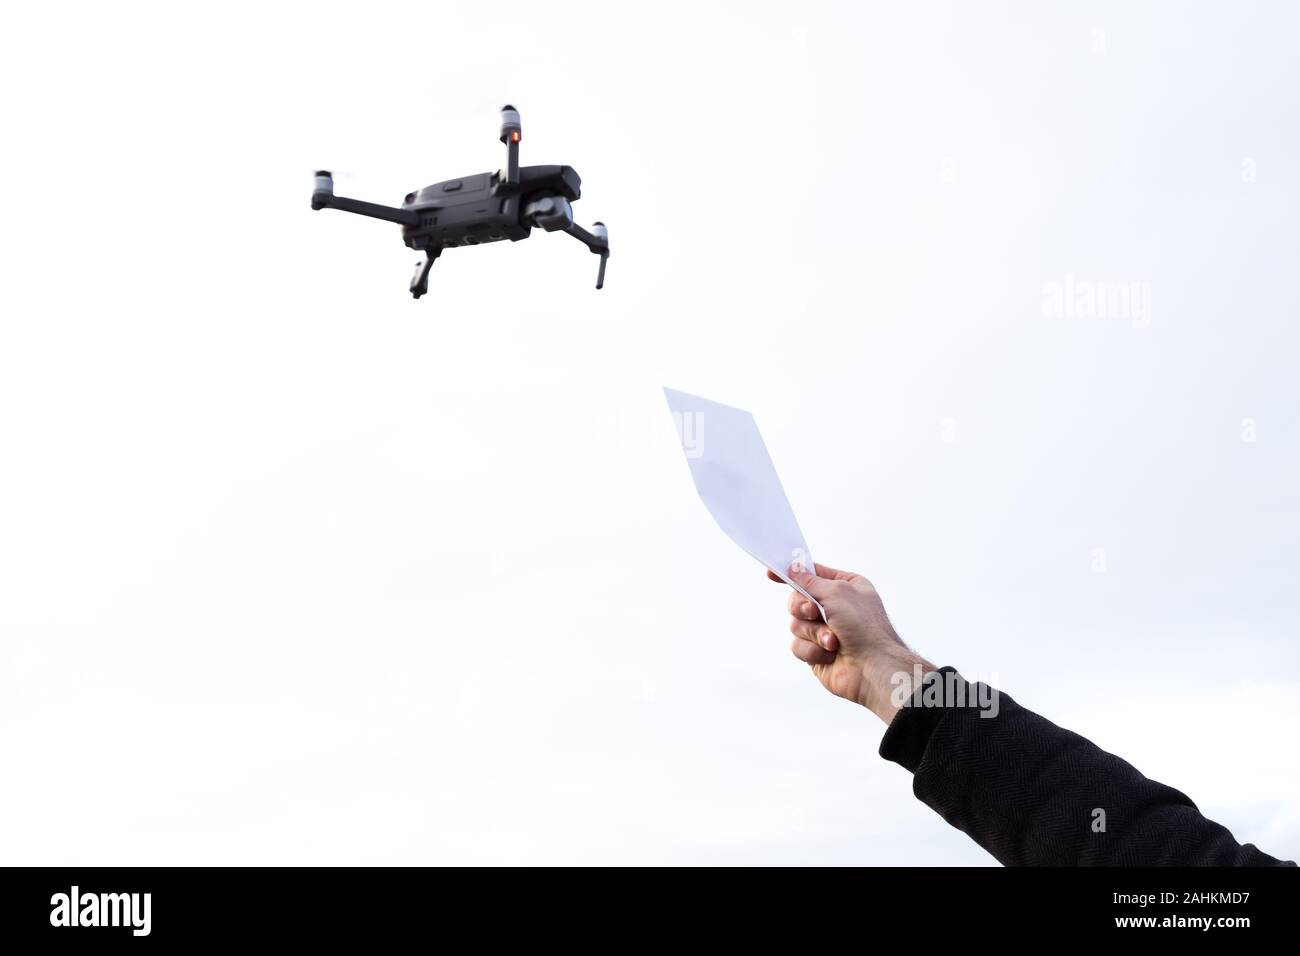 Un drone autonome de livraison de courrier avec une main tenant un paquet au ciel. Banque D'Images